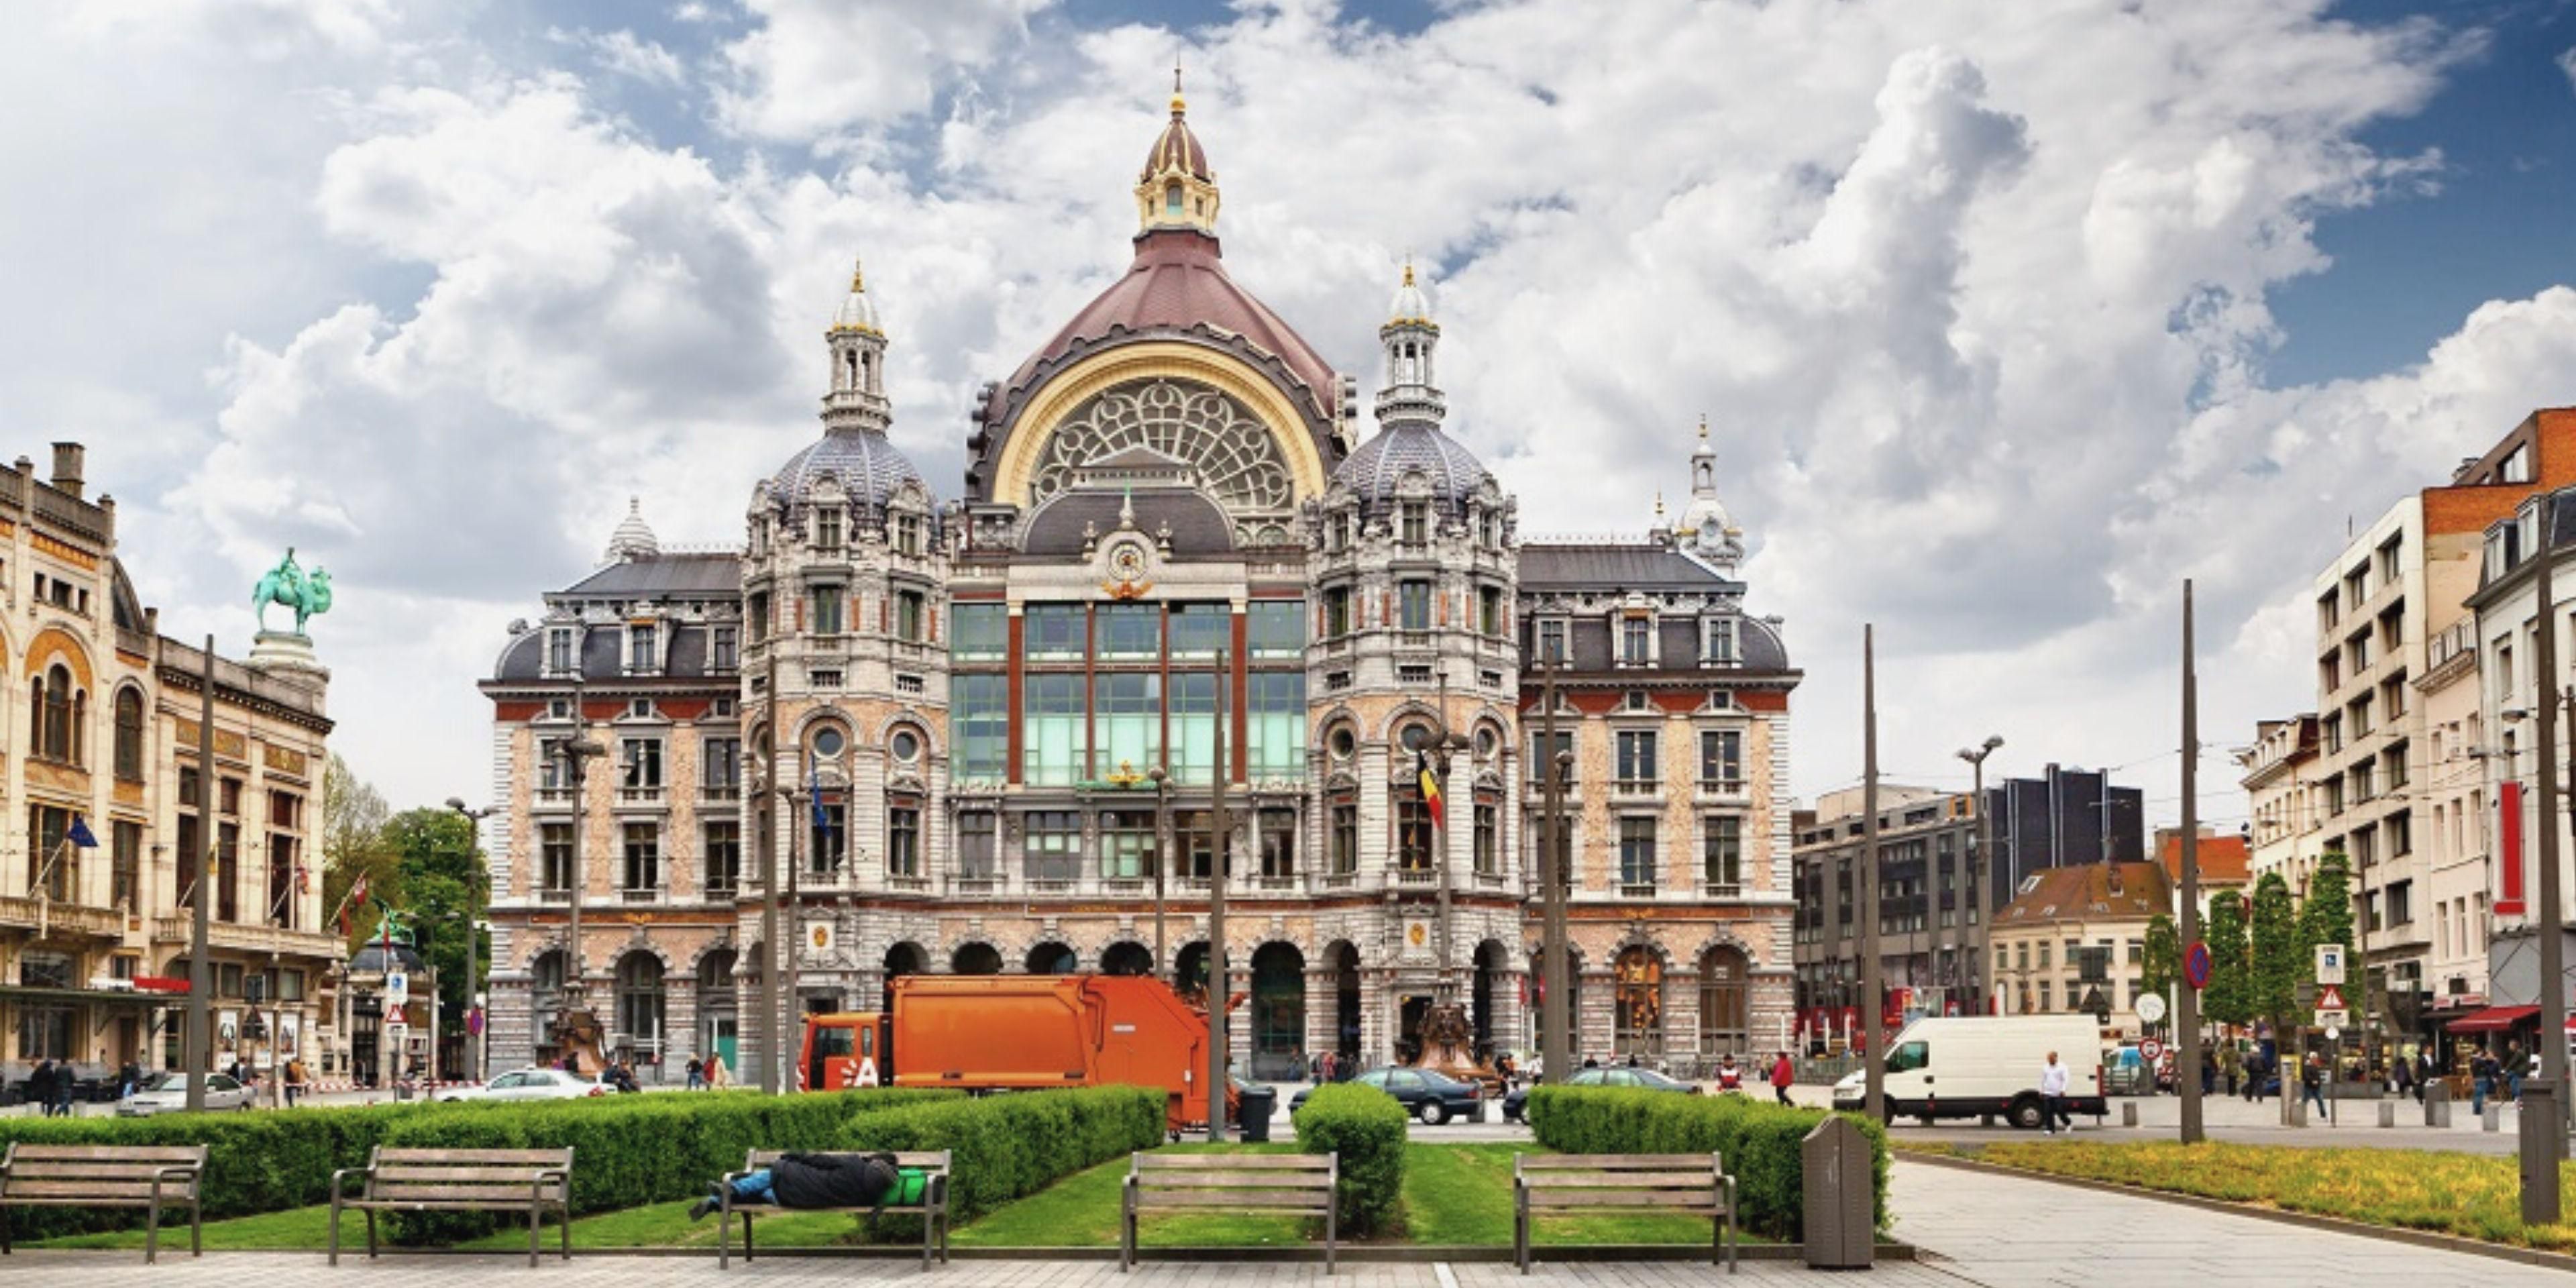 Wist je dat het station Antwerpen-Centraal één van de mooiste stations ter wereld is?
Holiday Inn Express Antwerpen – City Centre ligt op minder dan 10 minuten wandelen van dit majestueuze gebouw en biedt talloze verbindingen naar grote Europese steden en de internationale luchthaven van Brussel. Zeker een bezoekje waard!